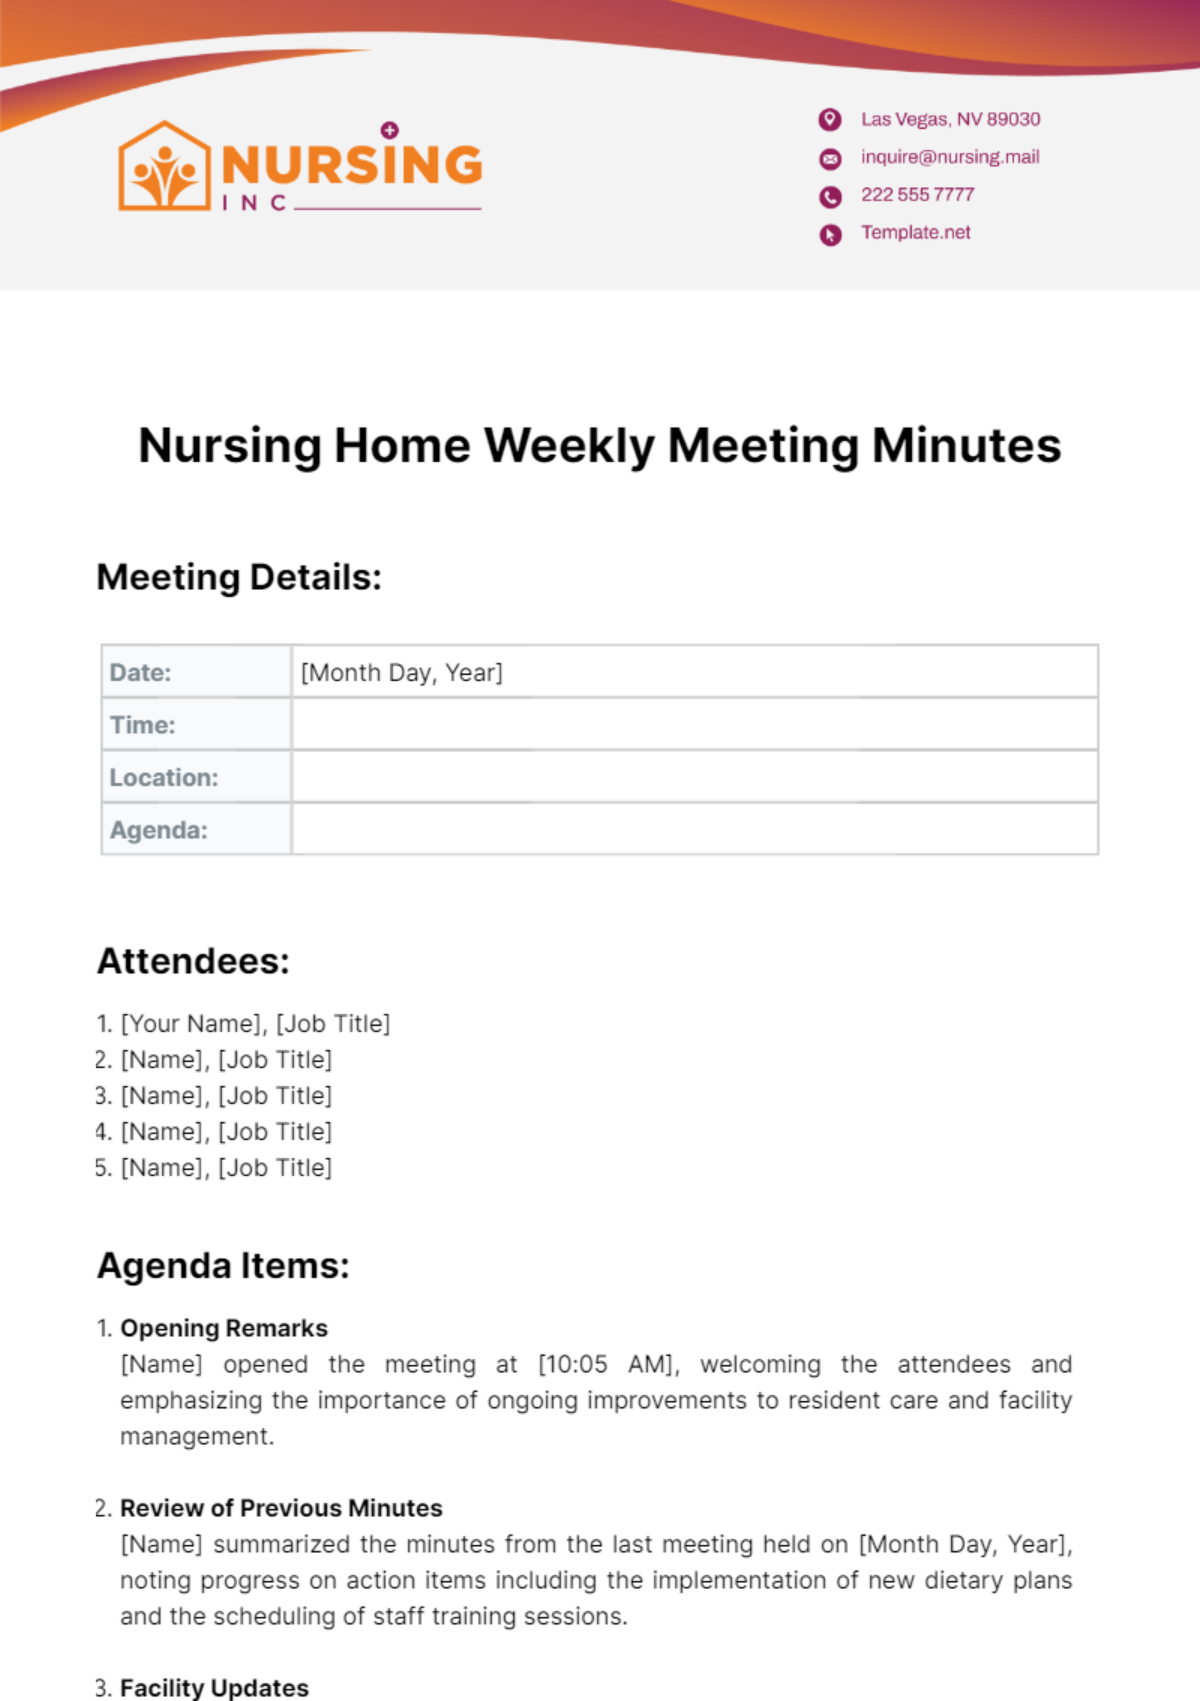 Nursing Home Weekly Meeting Minutes Template